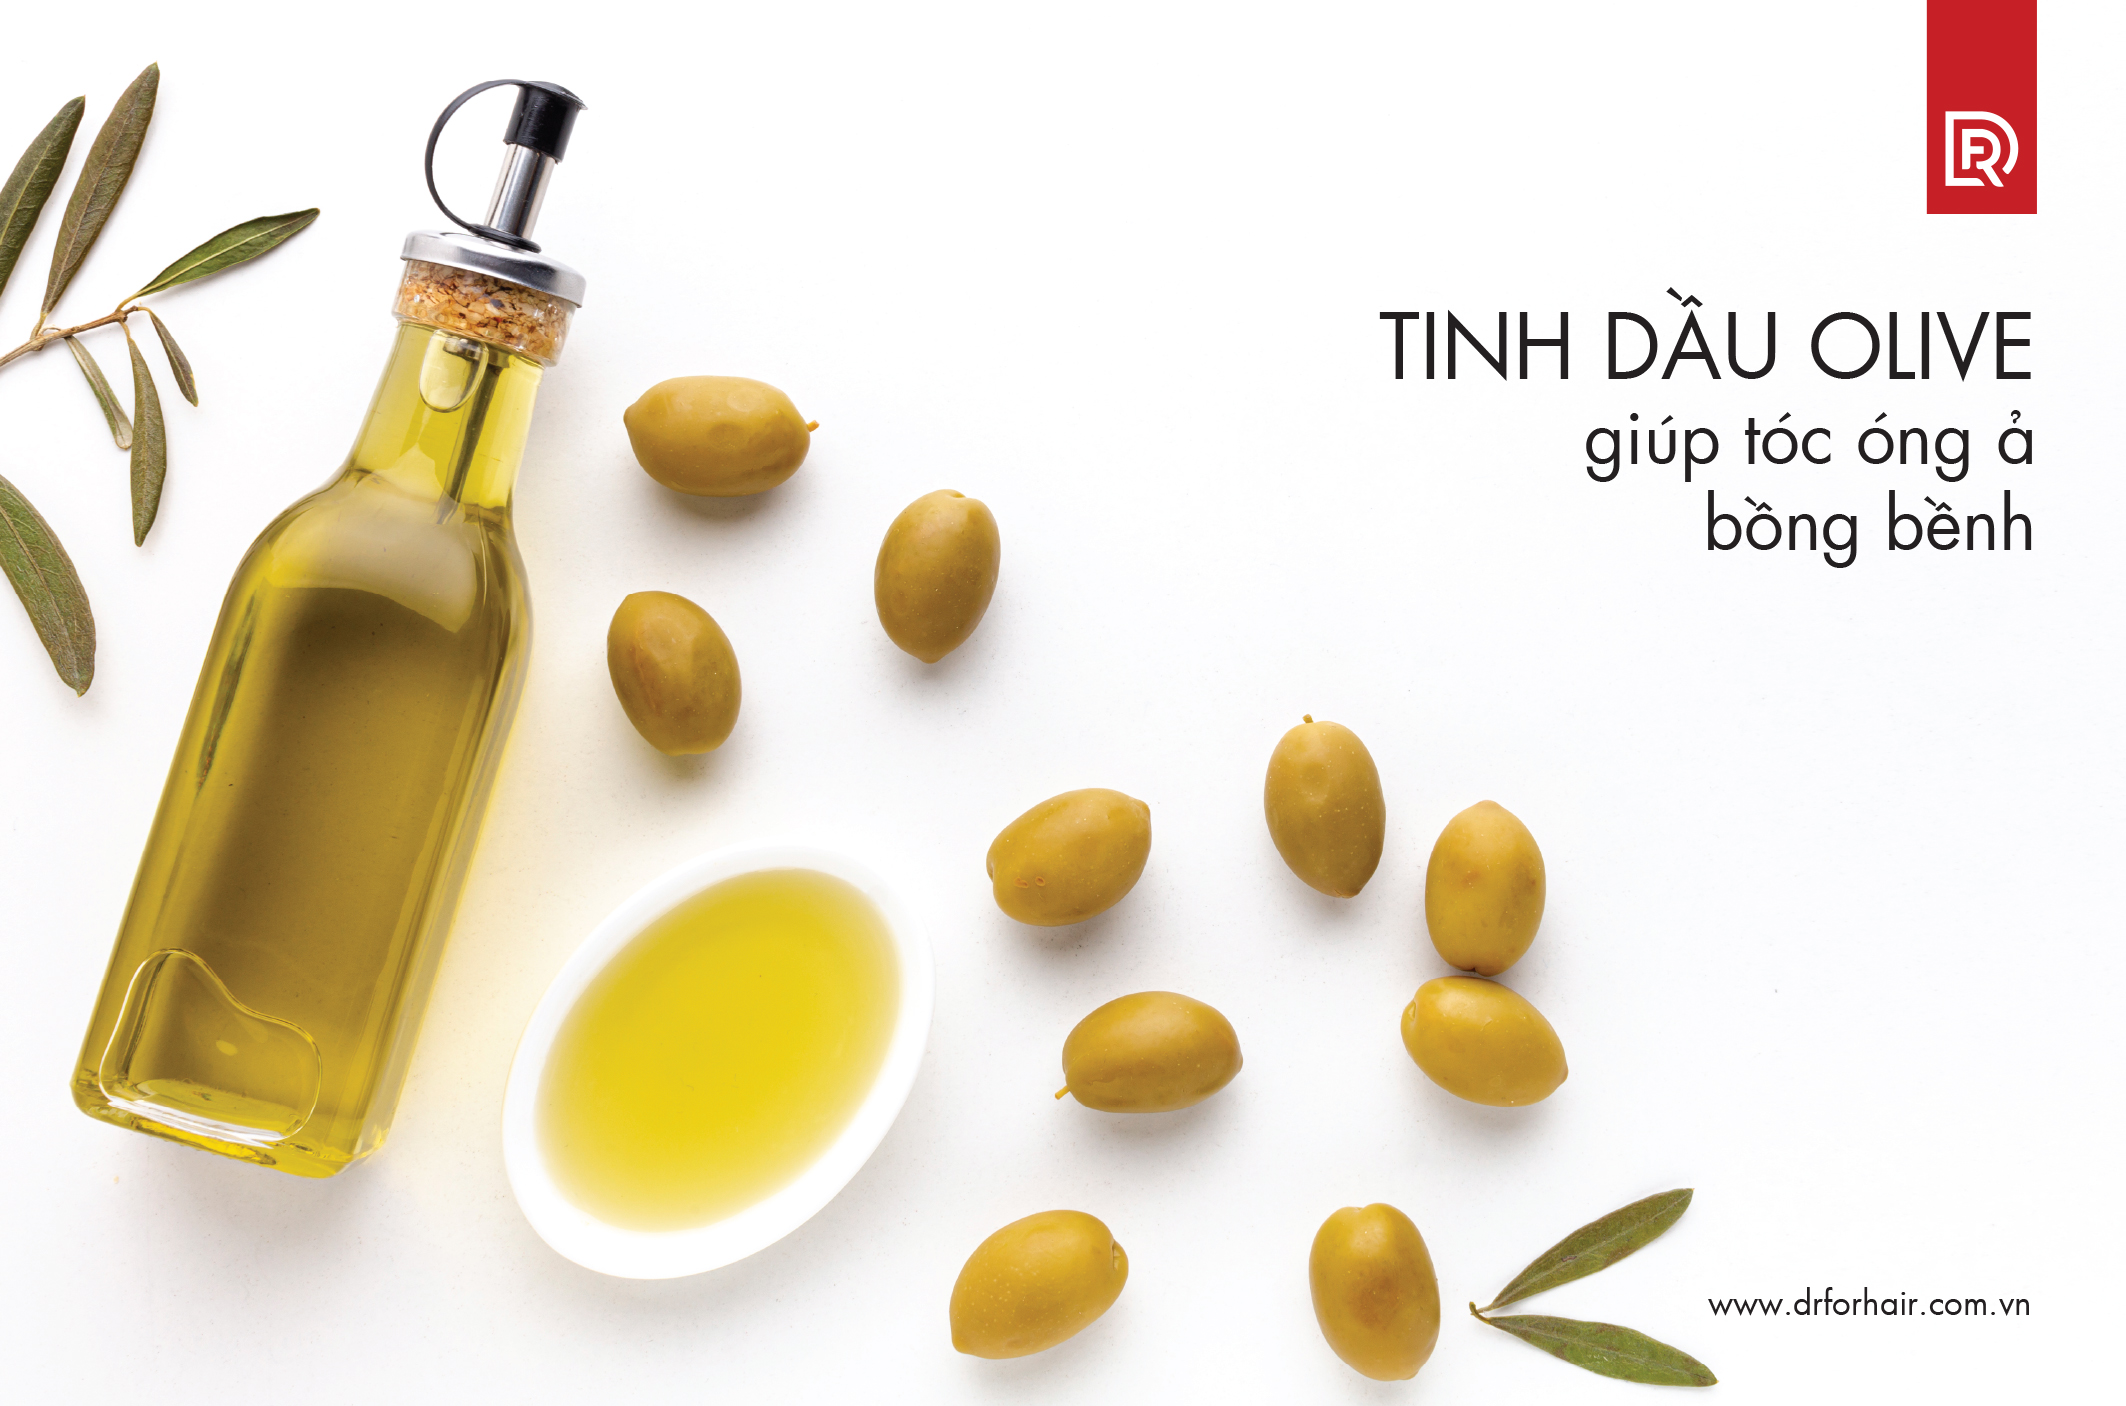 Tinh dầu olive giúp tóc óng ả bồng bềnh